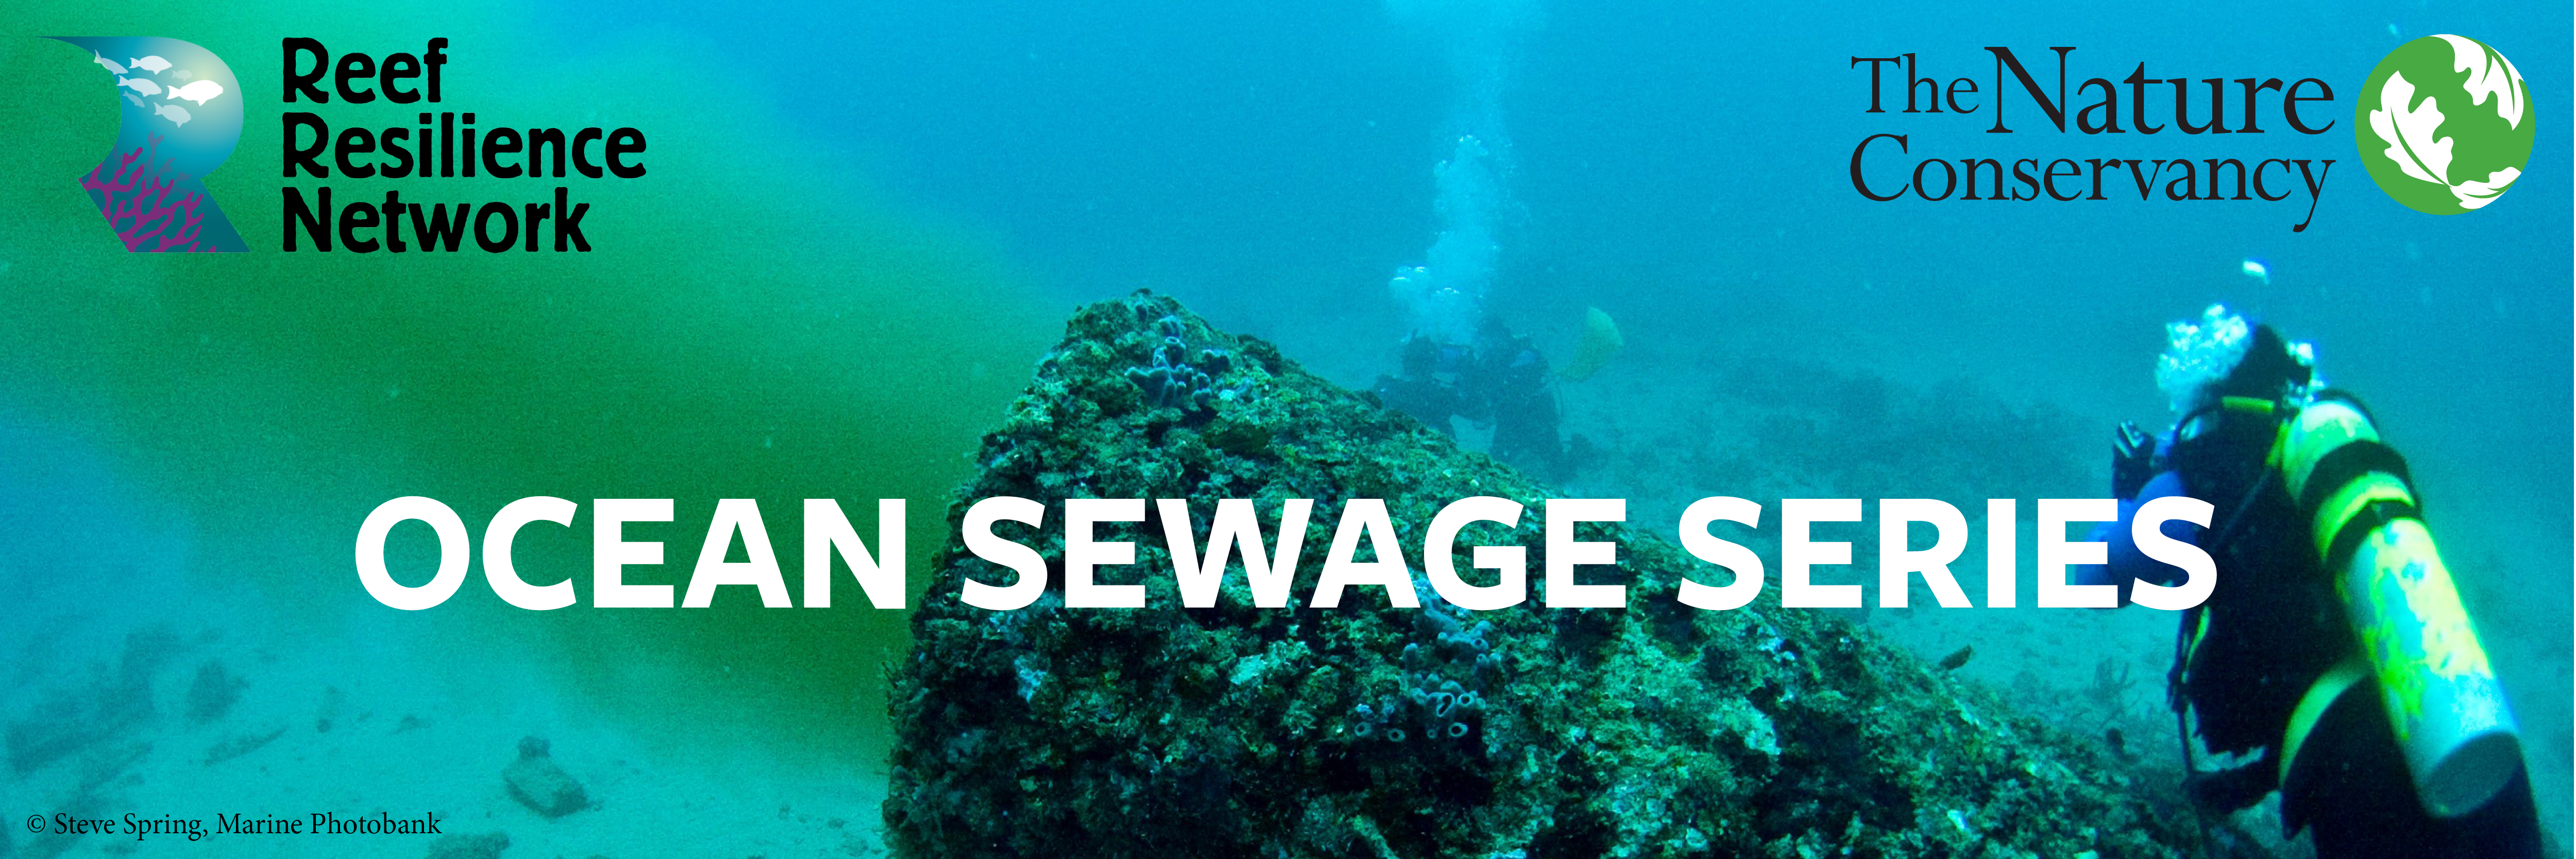 Sewage Series Banner 2021